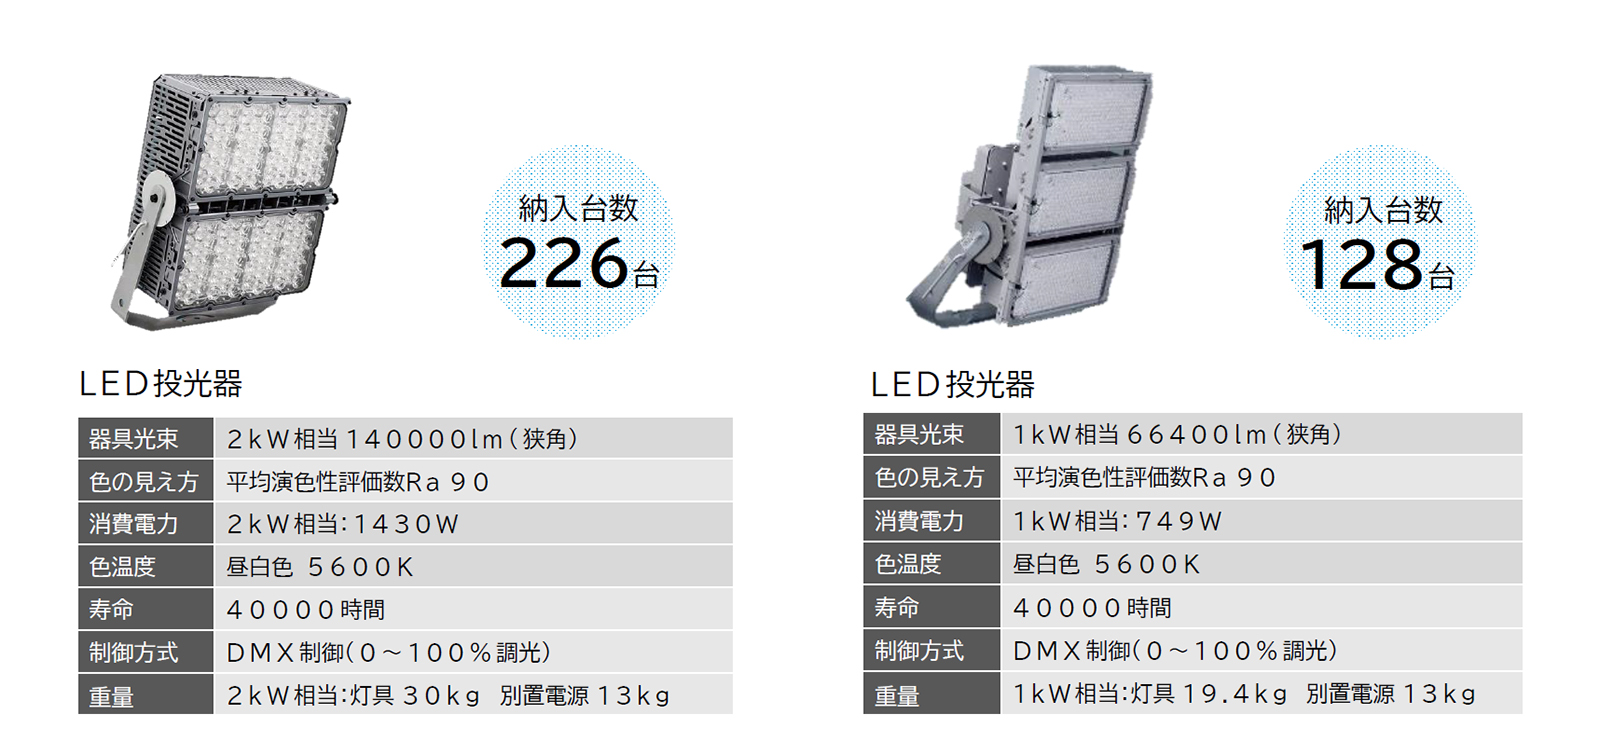 図版：スタジアムに納入されたLED投光器。2kW相当のものが226台、1kW相当のものが128台